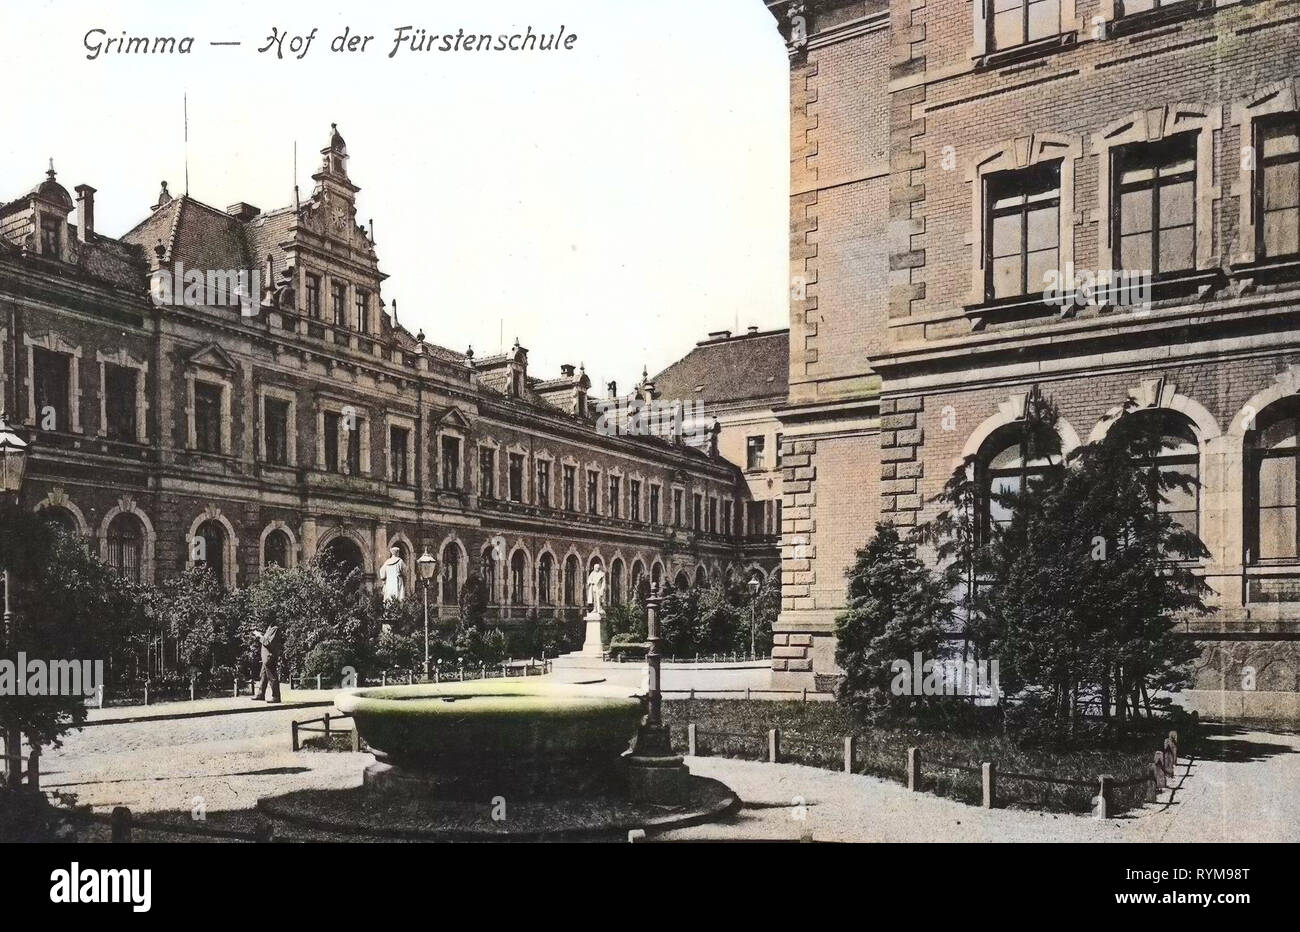 Gymnasium St. Augustin zu Grimma, 1903, Landkreis Leipzig, Grimma, Innenhof der Fürstenschule, Germany Stock Photo